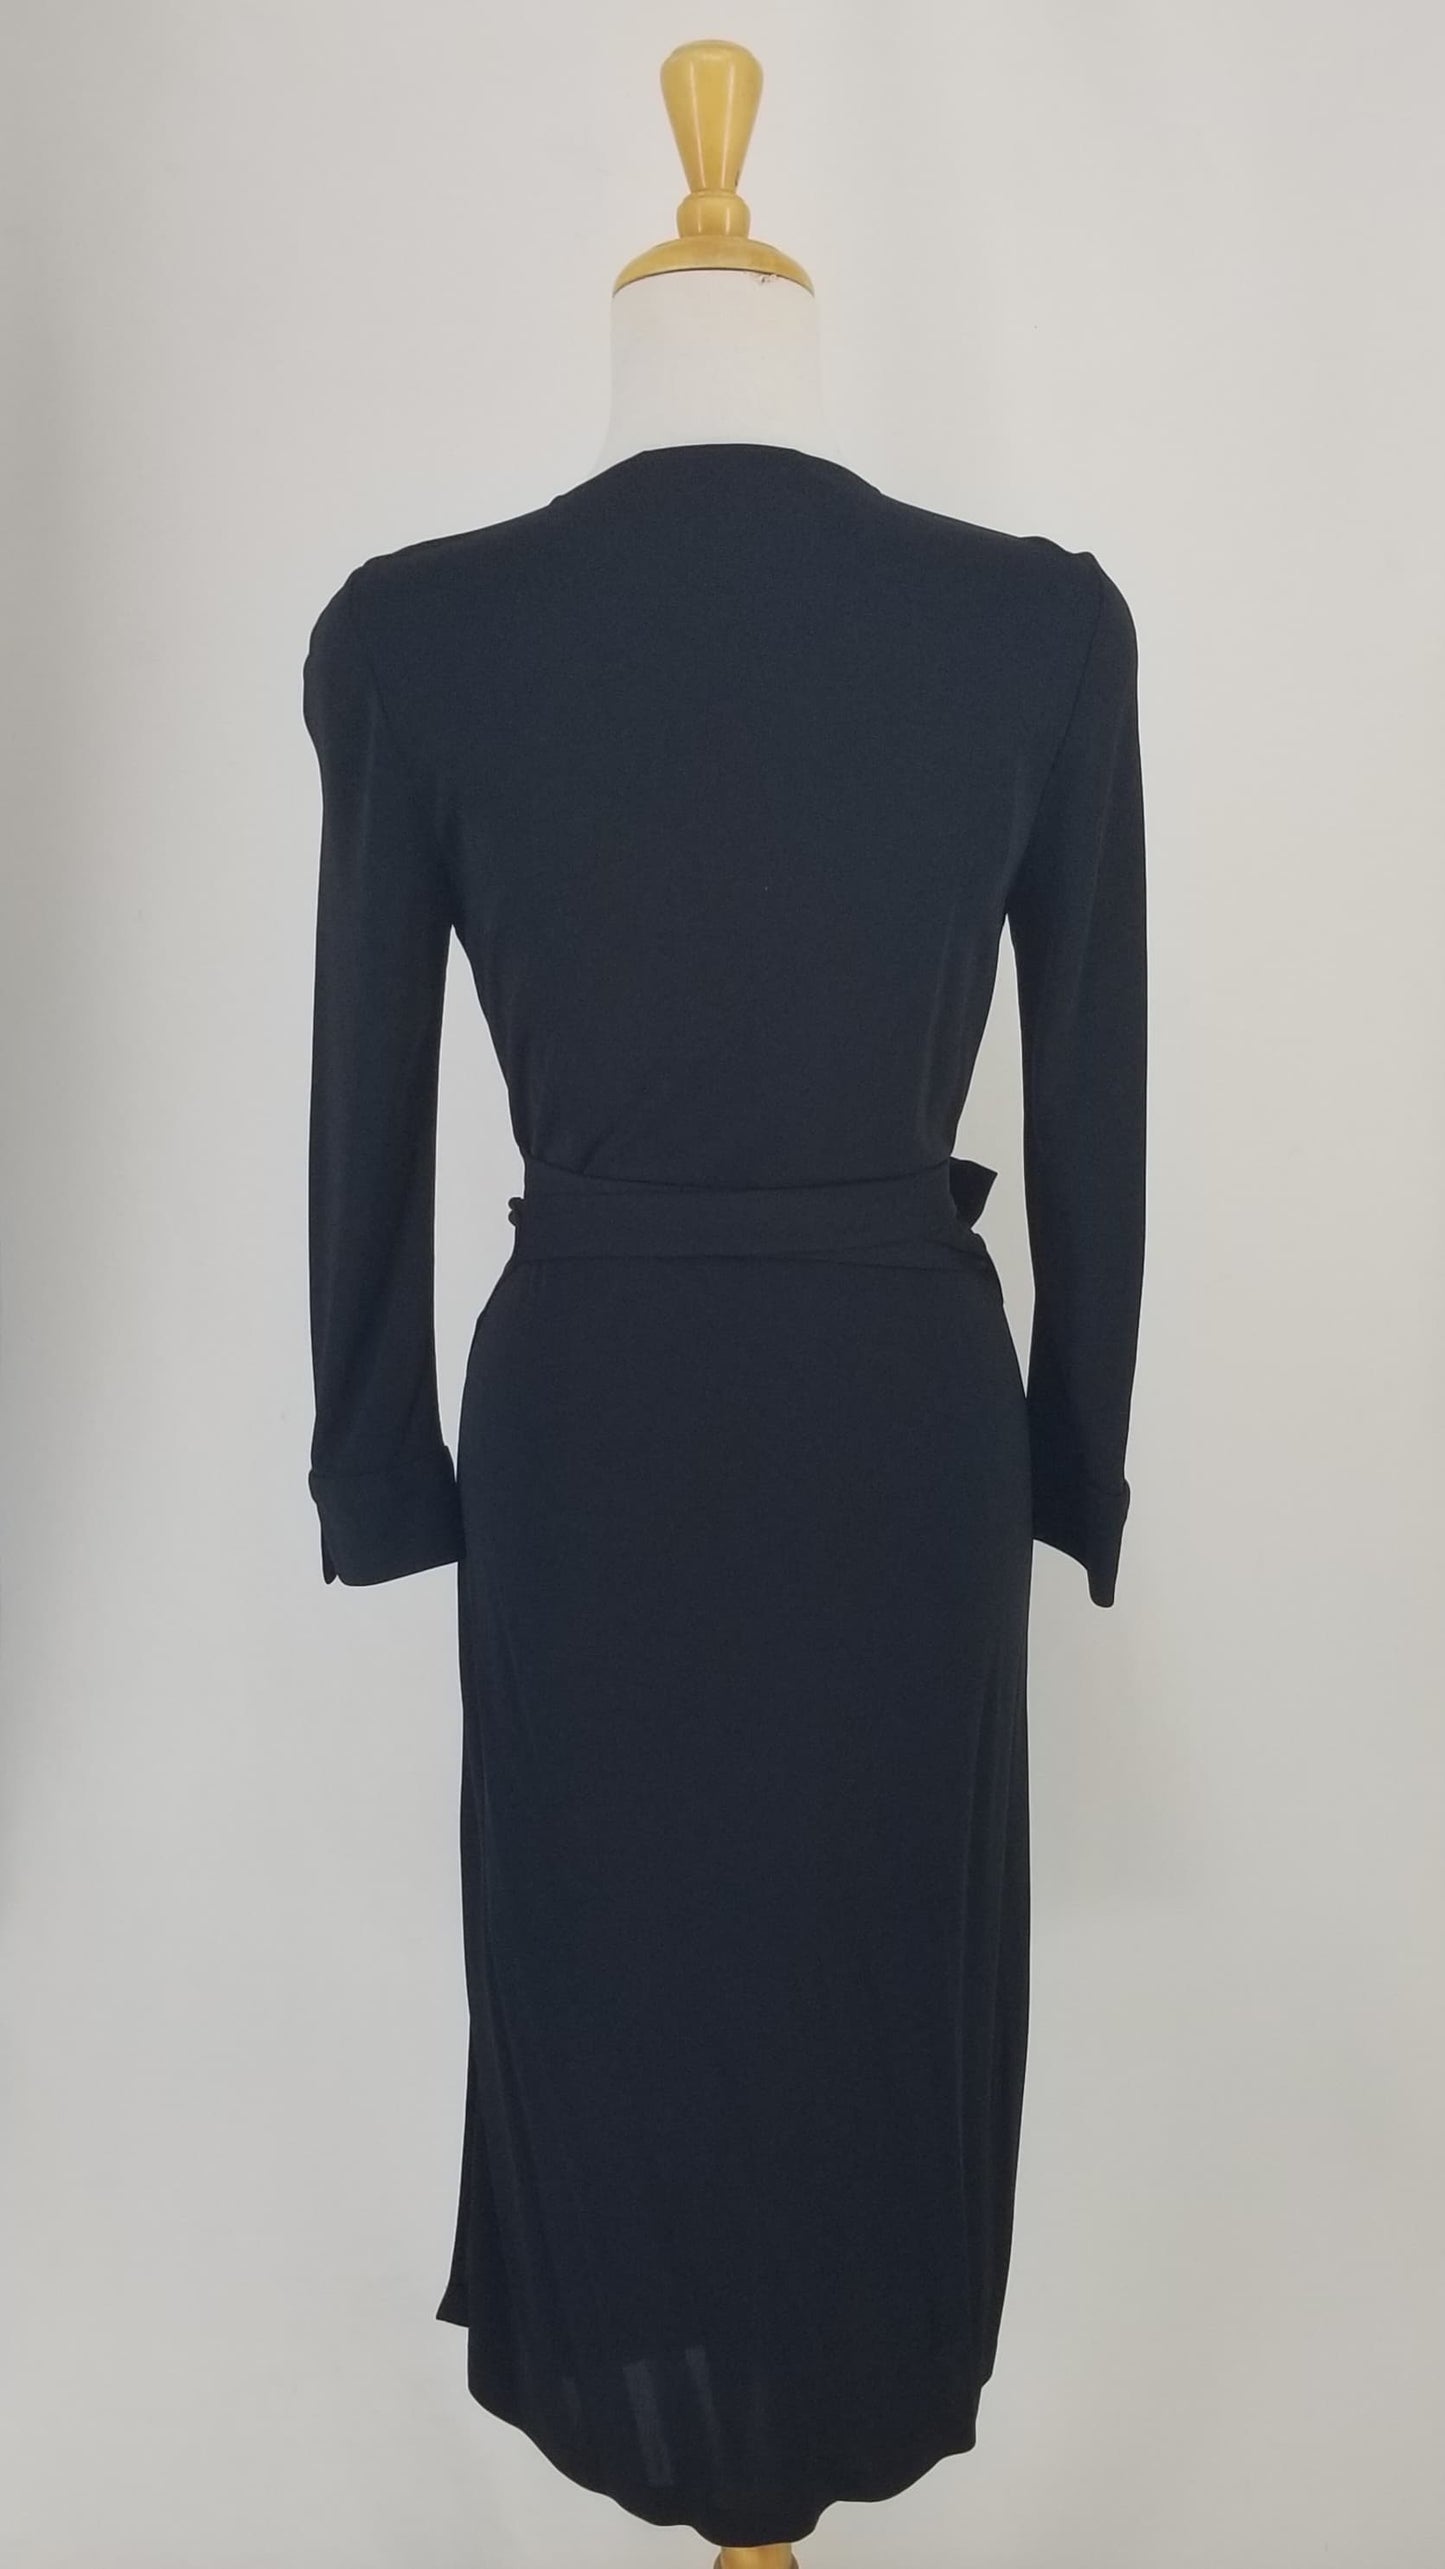 Authentic Diane Von Furstenberg Black Wrap Dress Sz 6